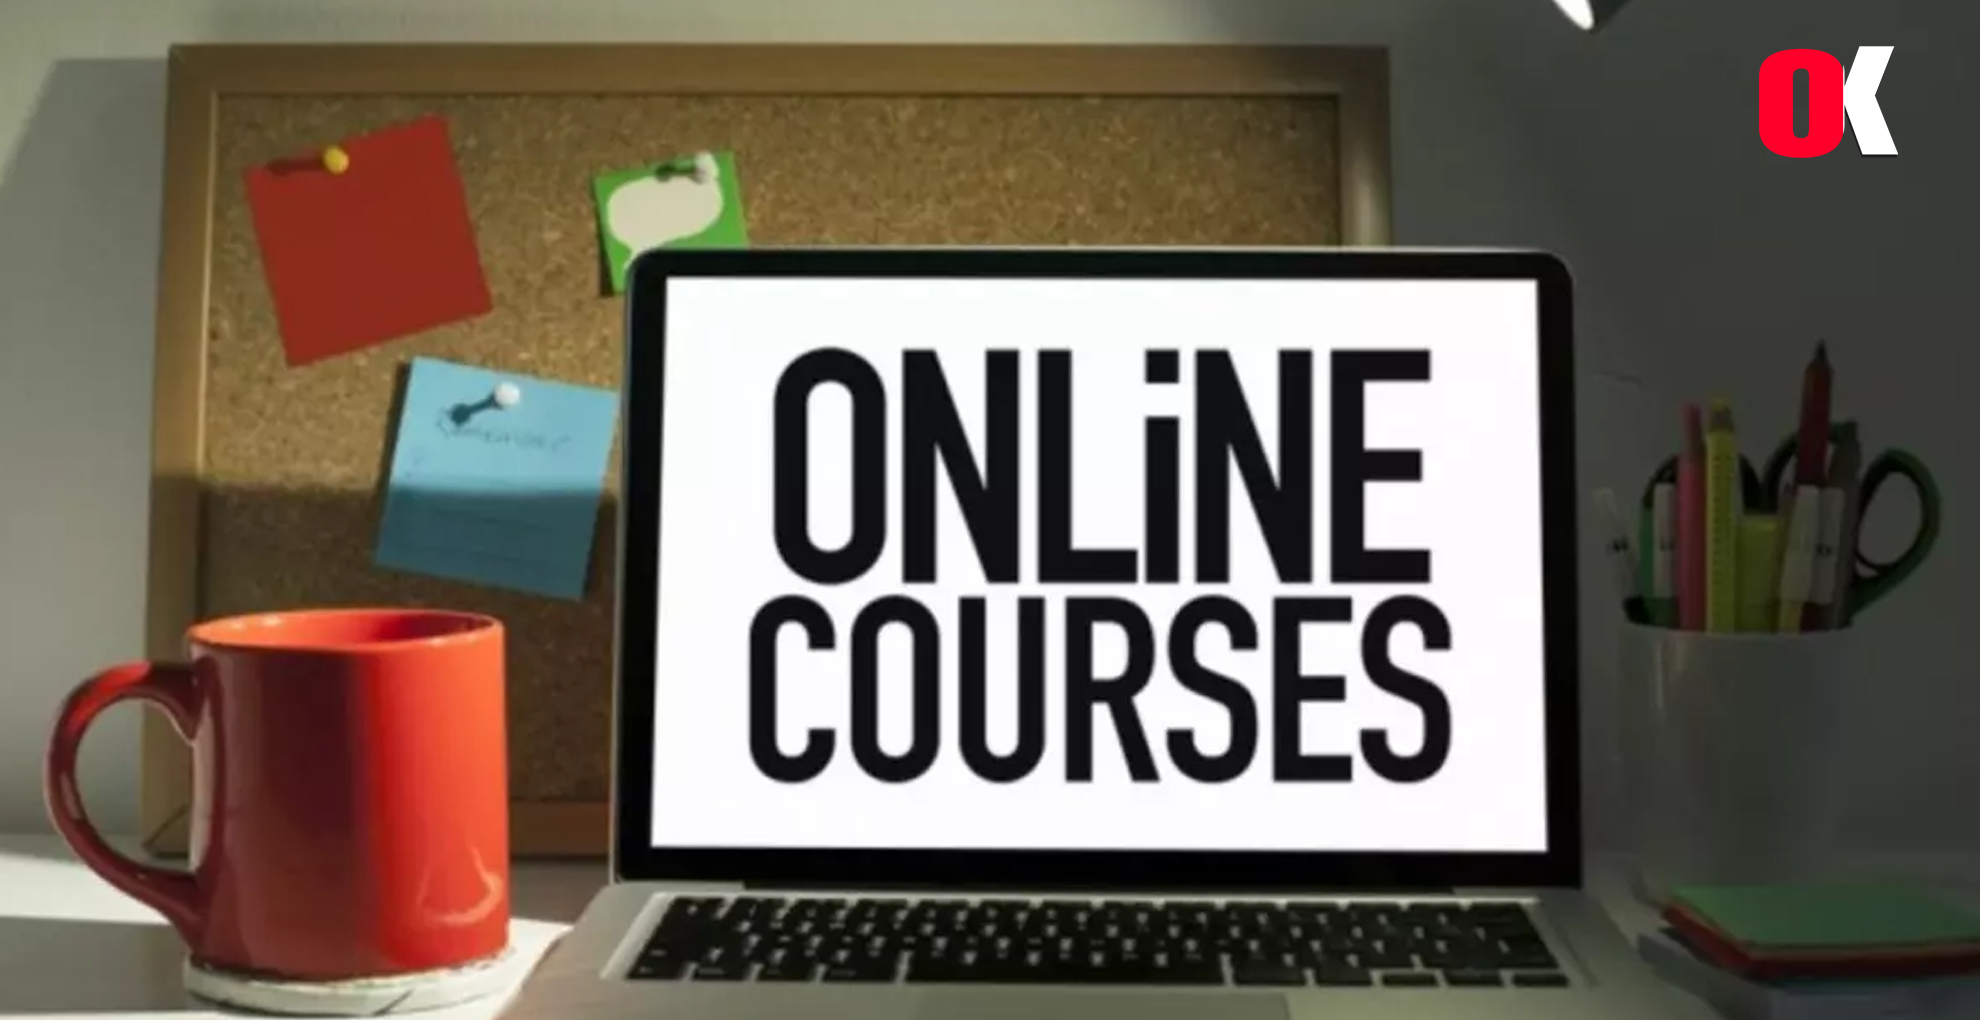 Online courses